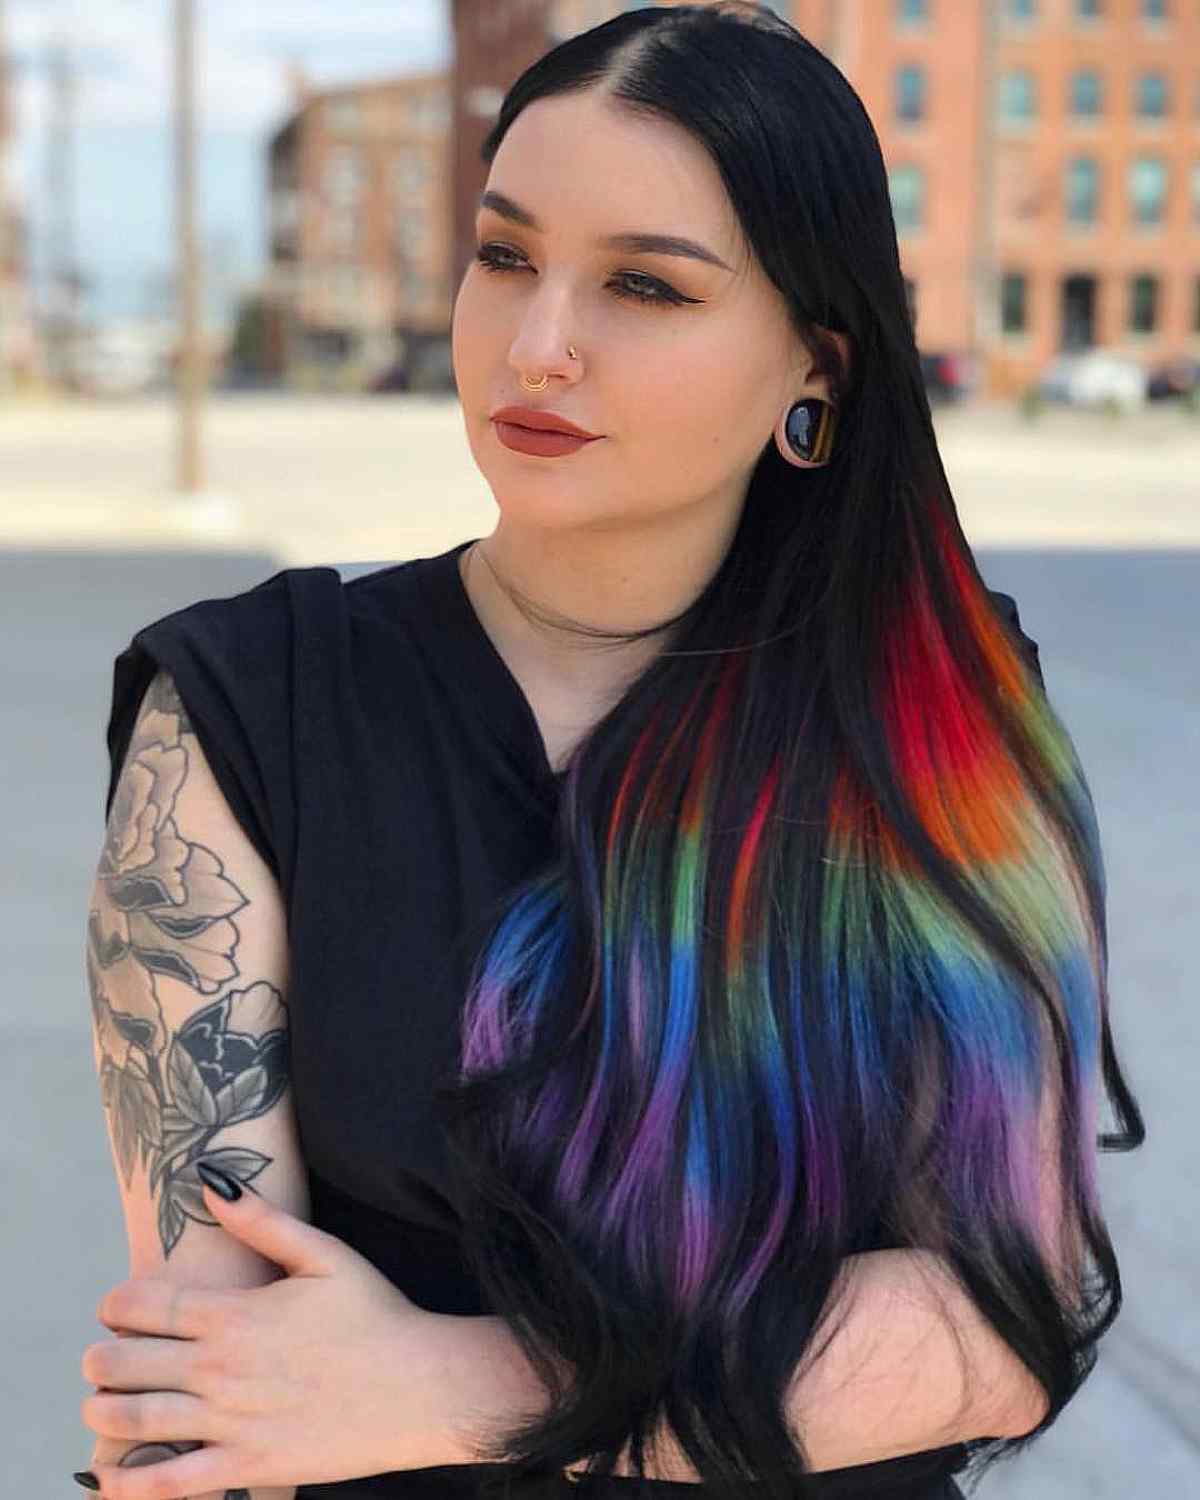 Long Black Hair with Rainbow Prism Streaks